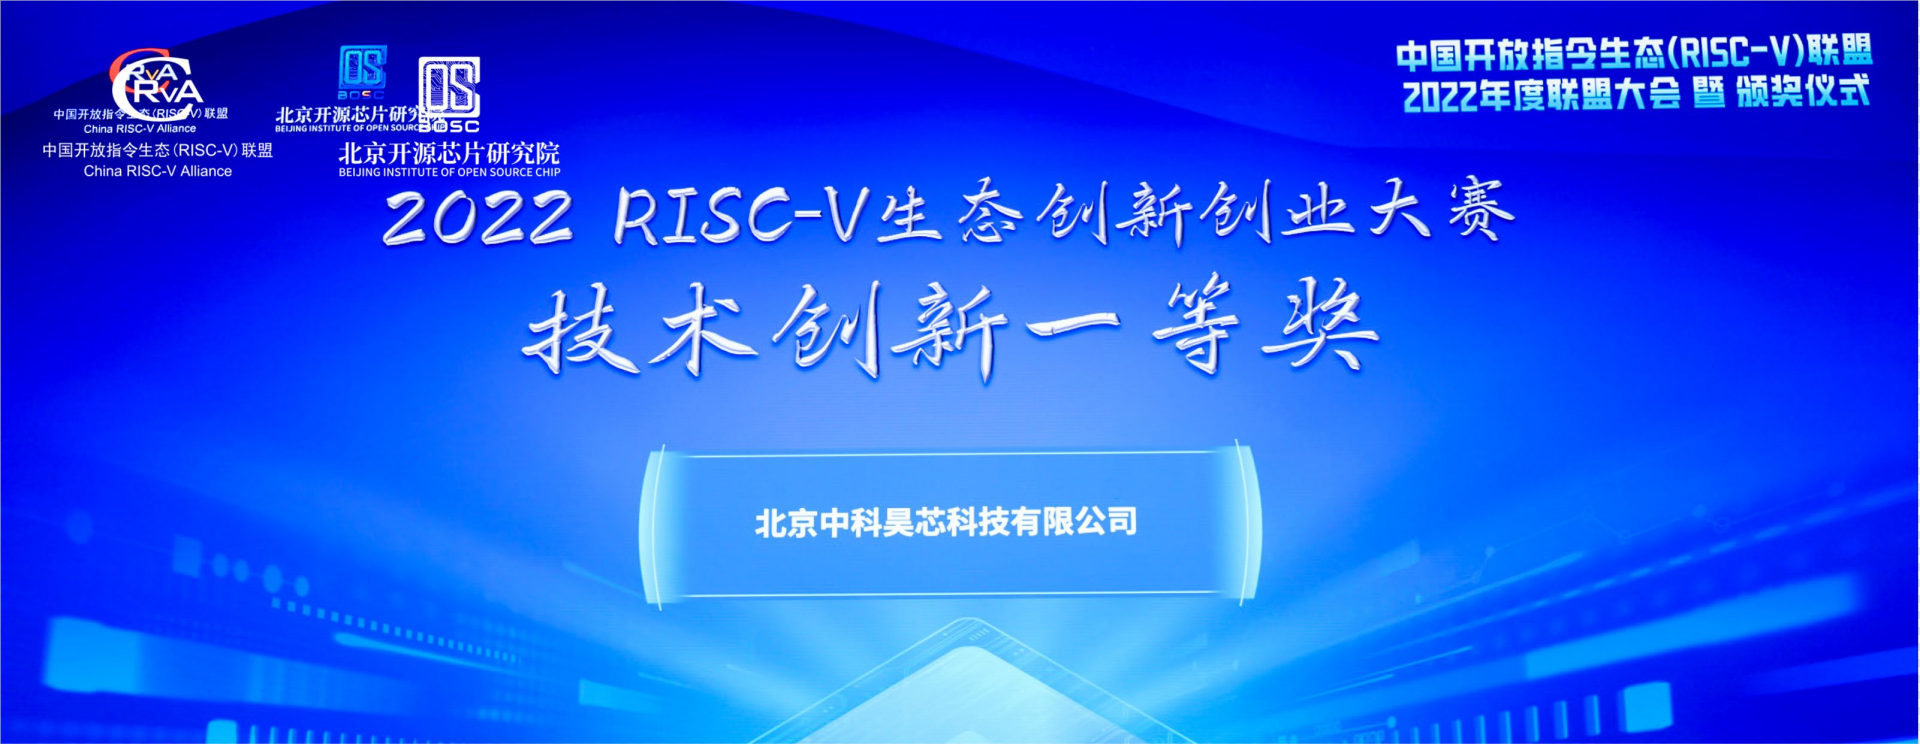 昊芯荣获2022 RISC-V生态创新创业大赛一等奖